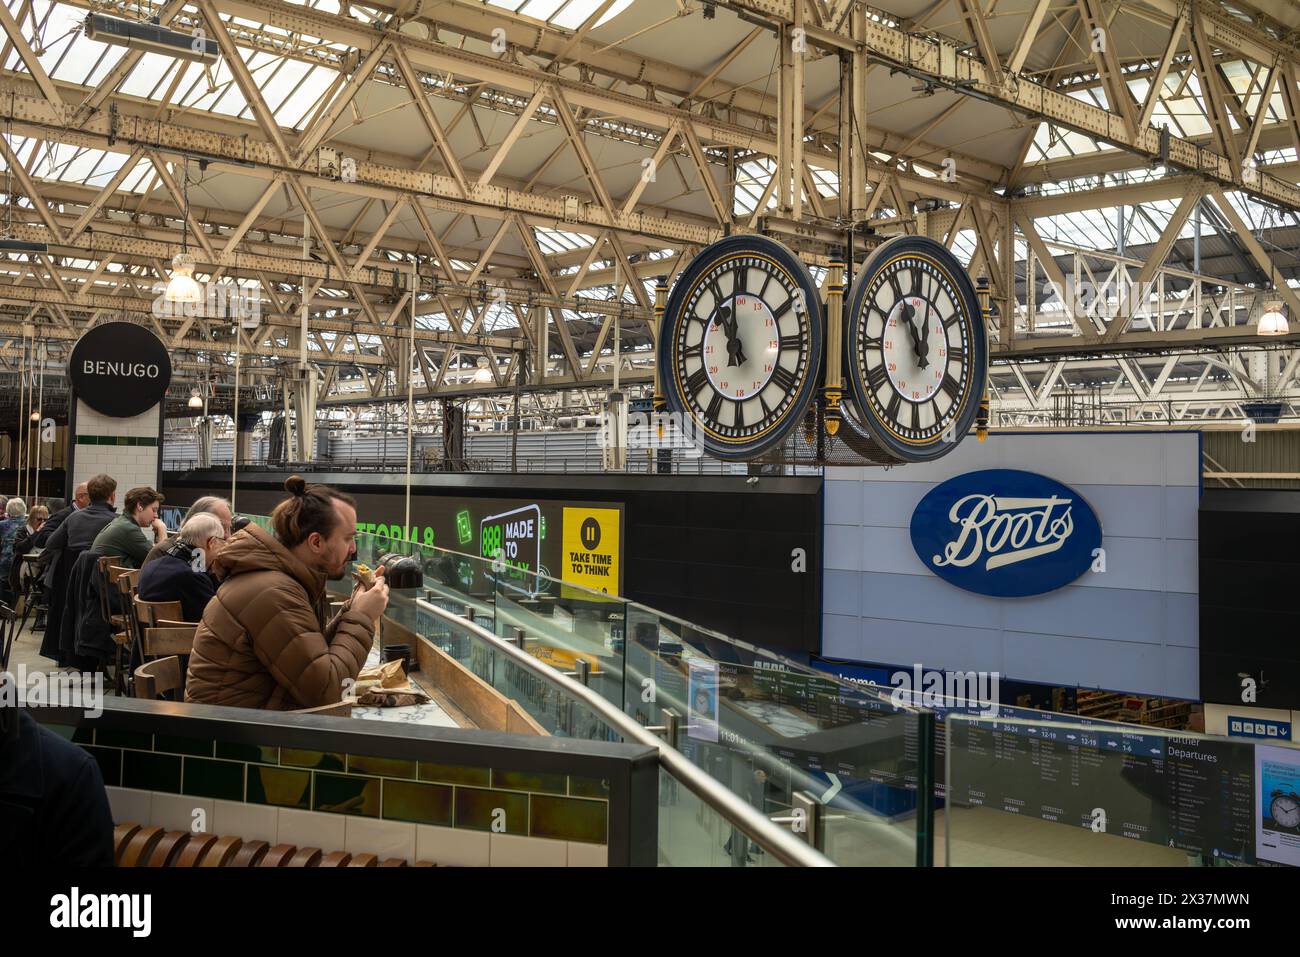 Les passagers du train mangent dans un restaurant de fièvres rapide à côté de la célèbre horloge de Waterloo Station, Lonodn, Royaume-Uni Banque D'Images